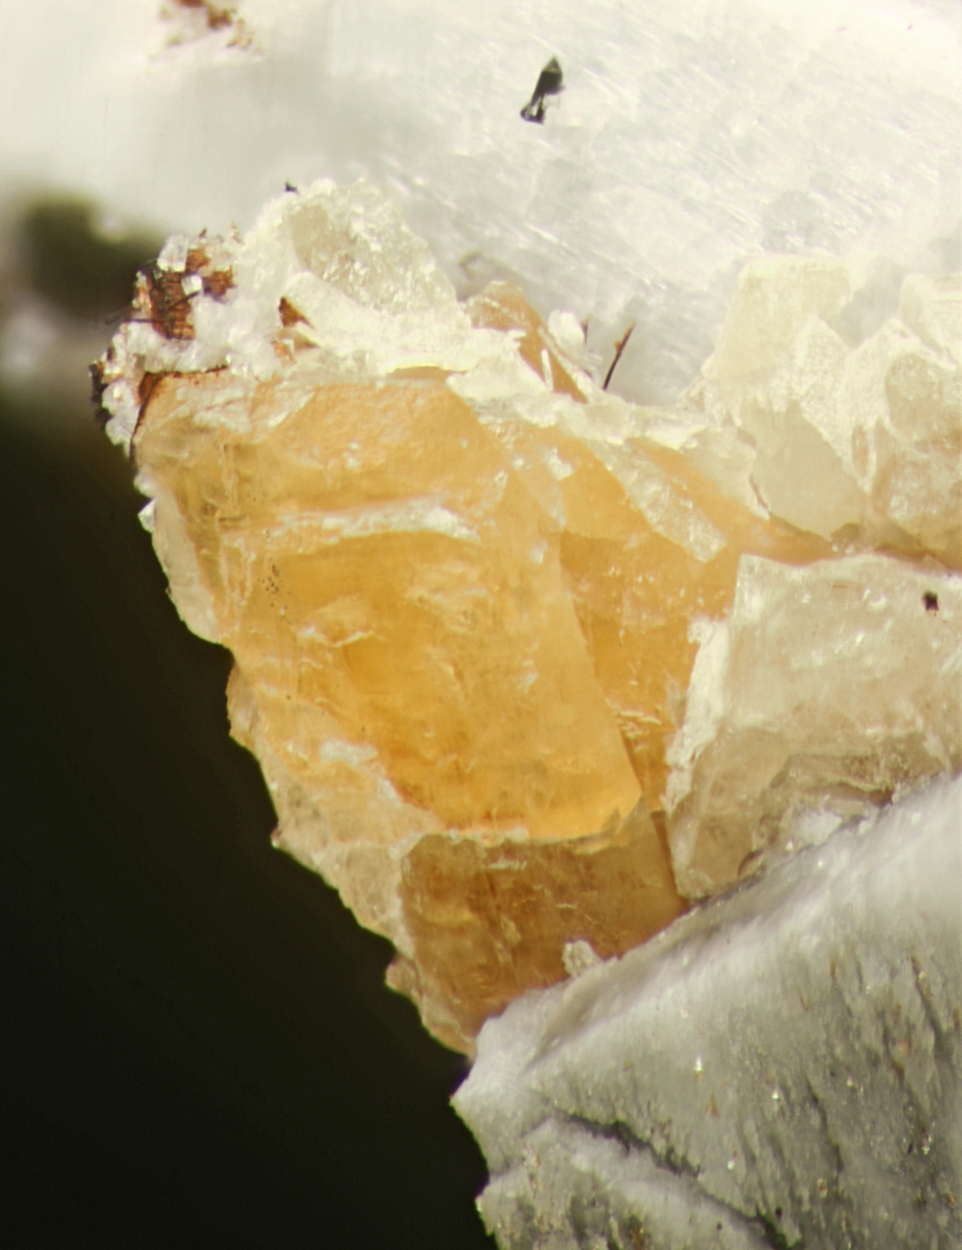 Wöhlerite Natrolite & Zircon